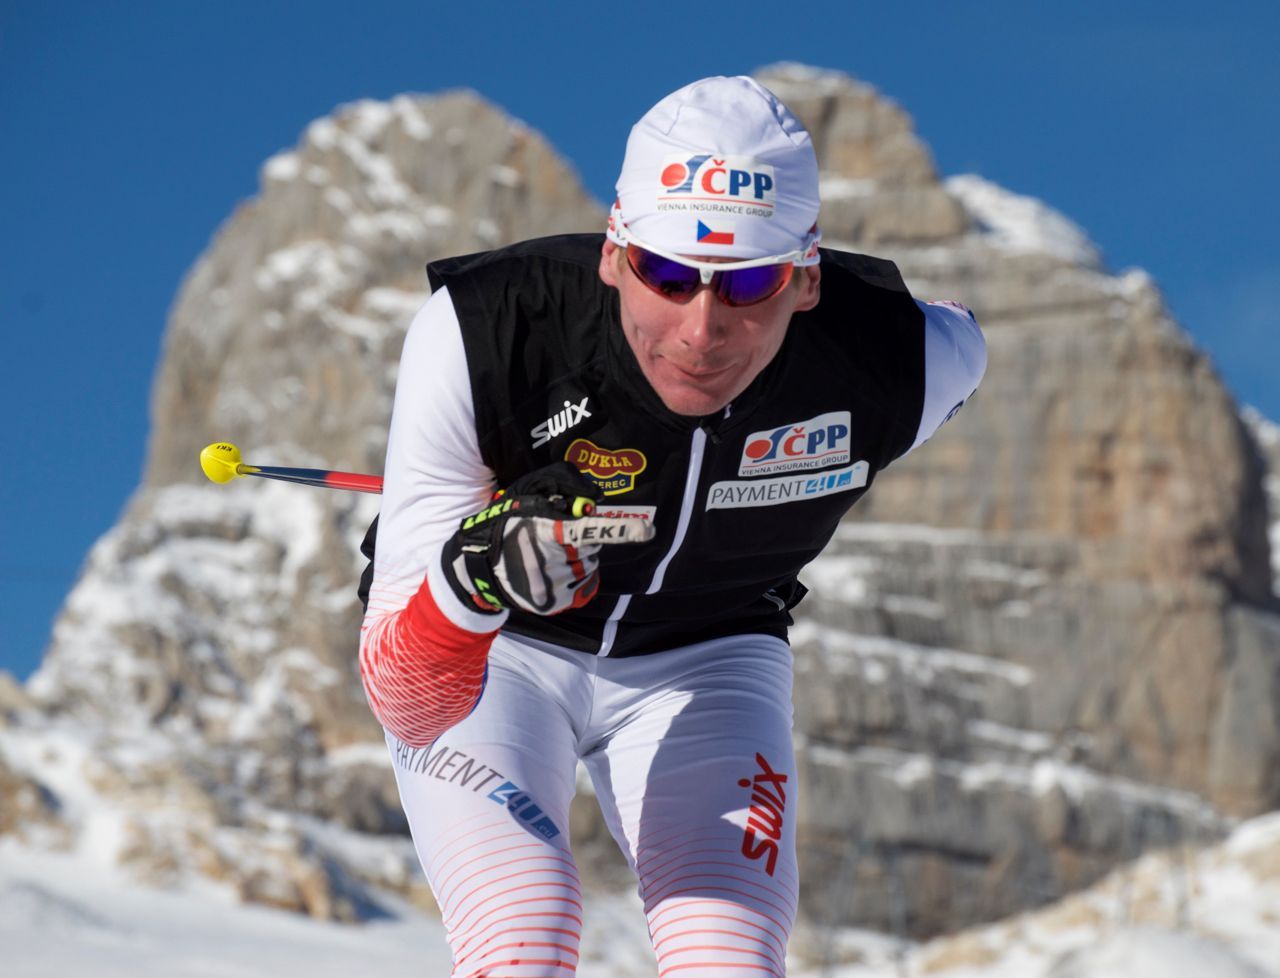 SP v běhu na lyžích 2015-16: Lukáš Bauer